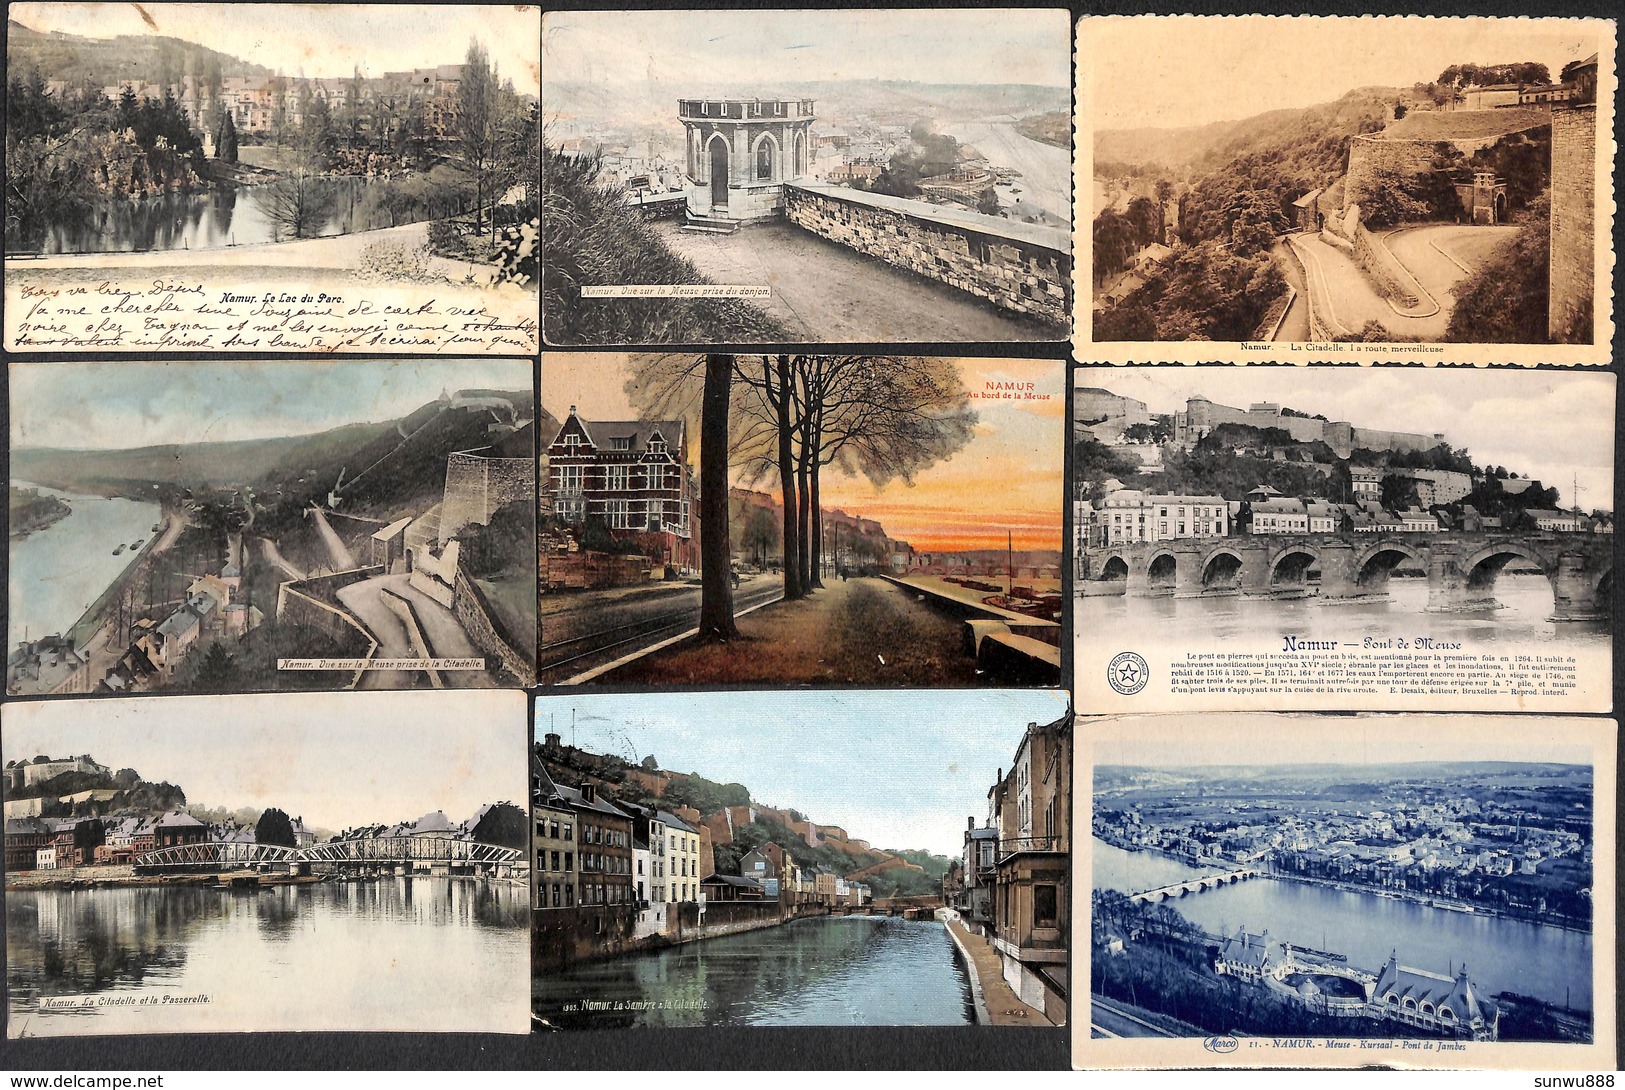 Namur - Lot 138 cartes (animation tram editions... voir zie see scans)  (petit petix prix)